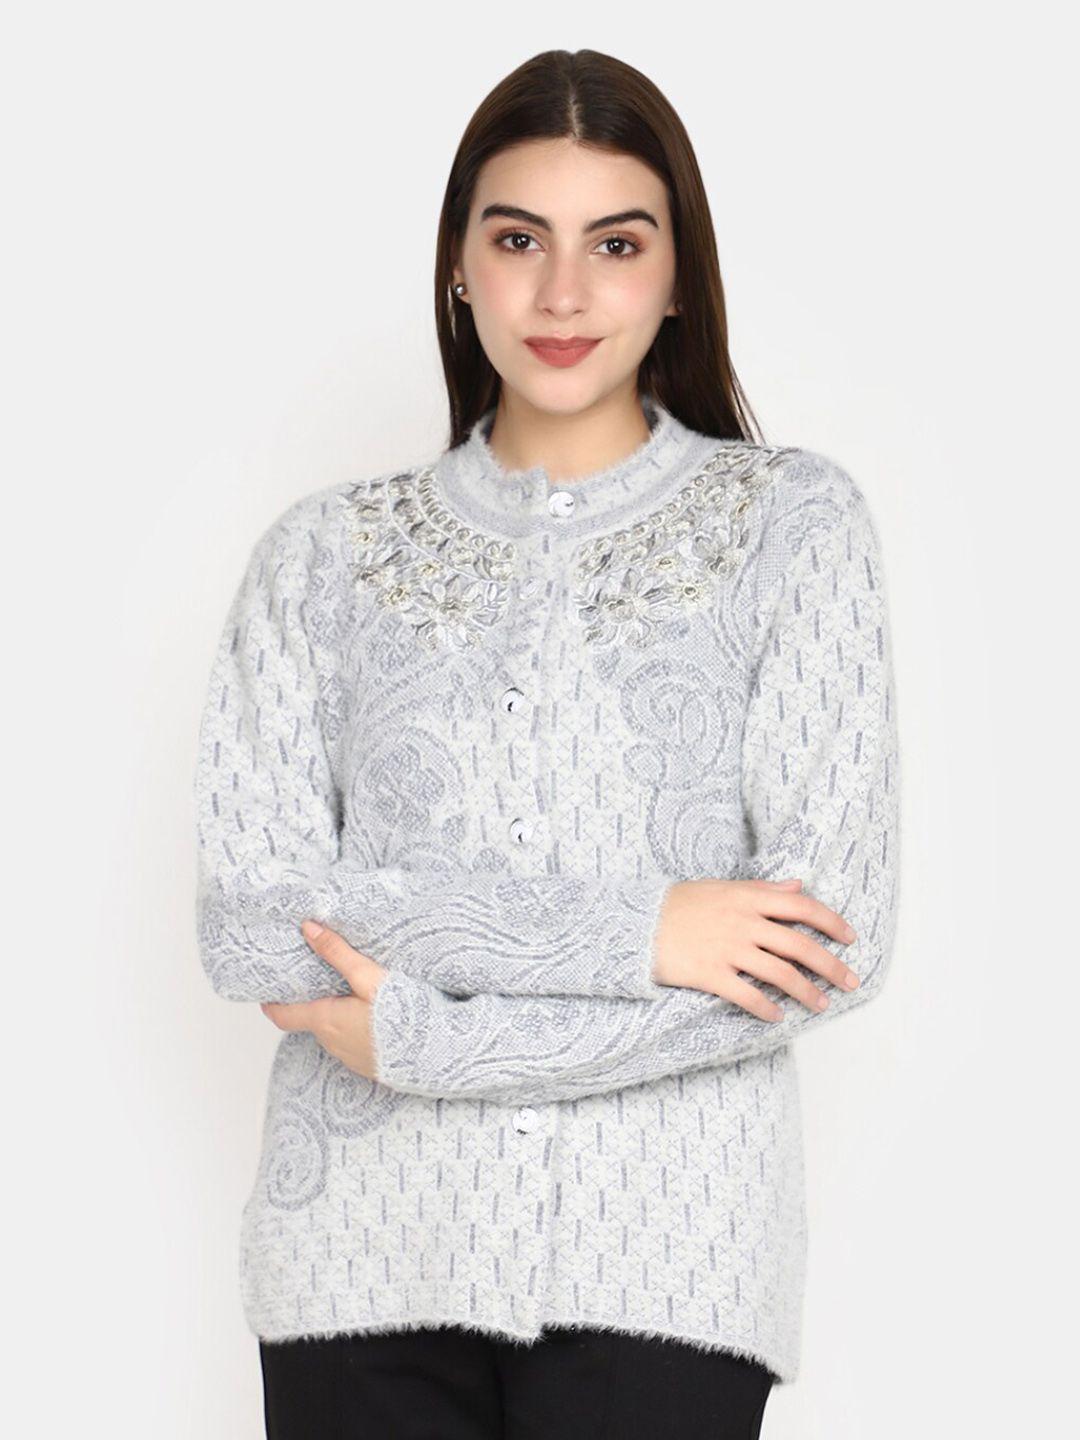 v-mart floral self designed long sleeves cotton cardigan